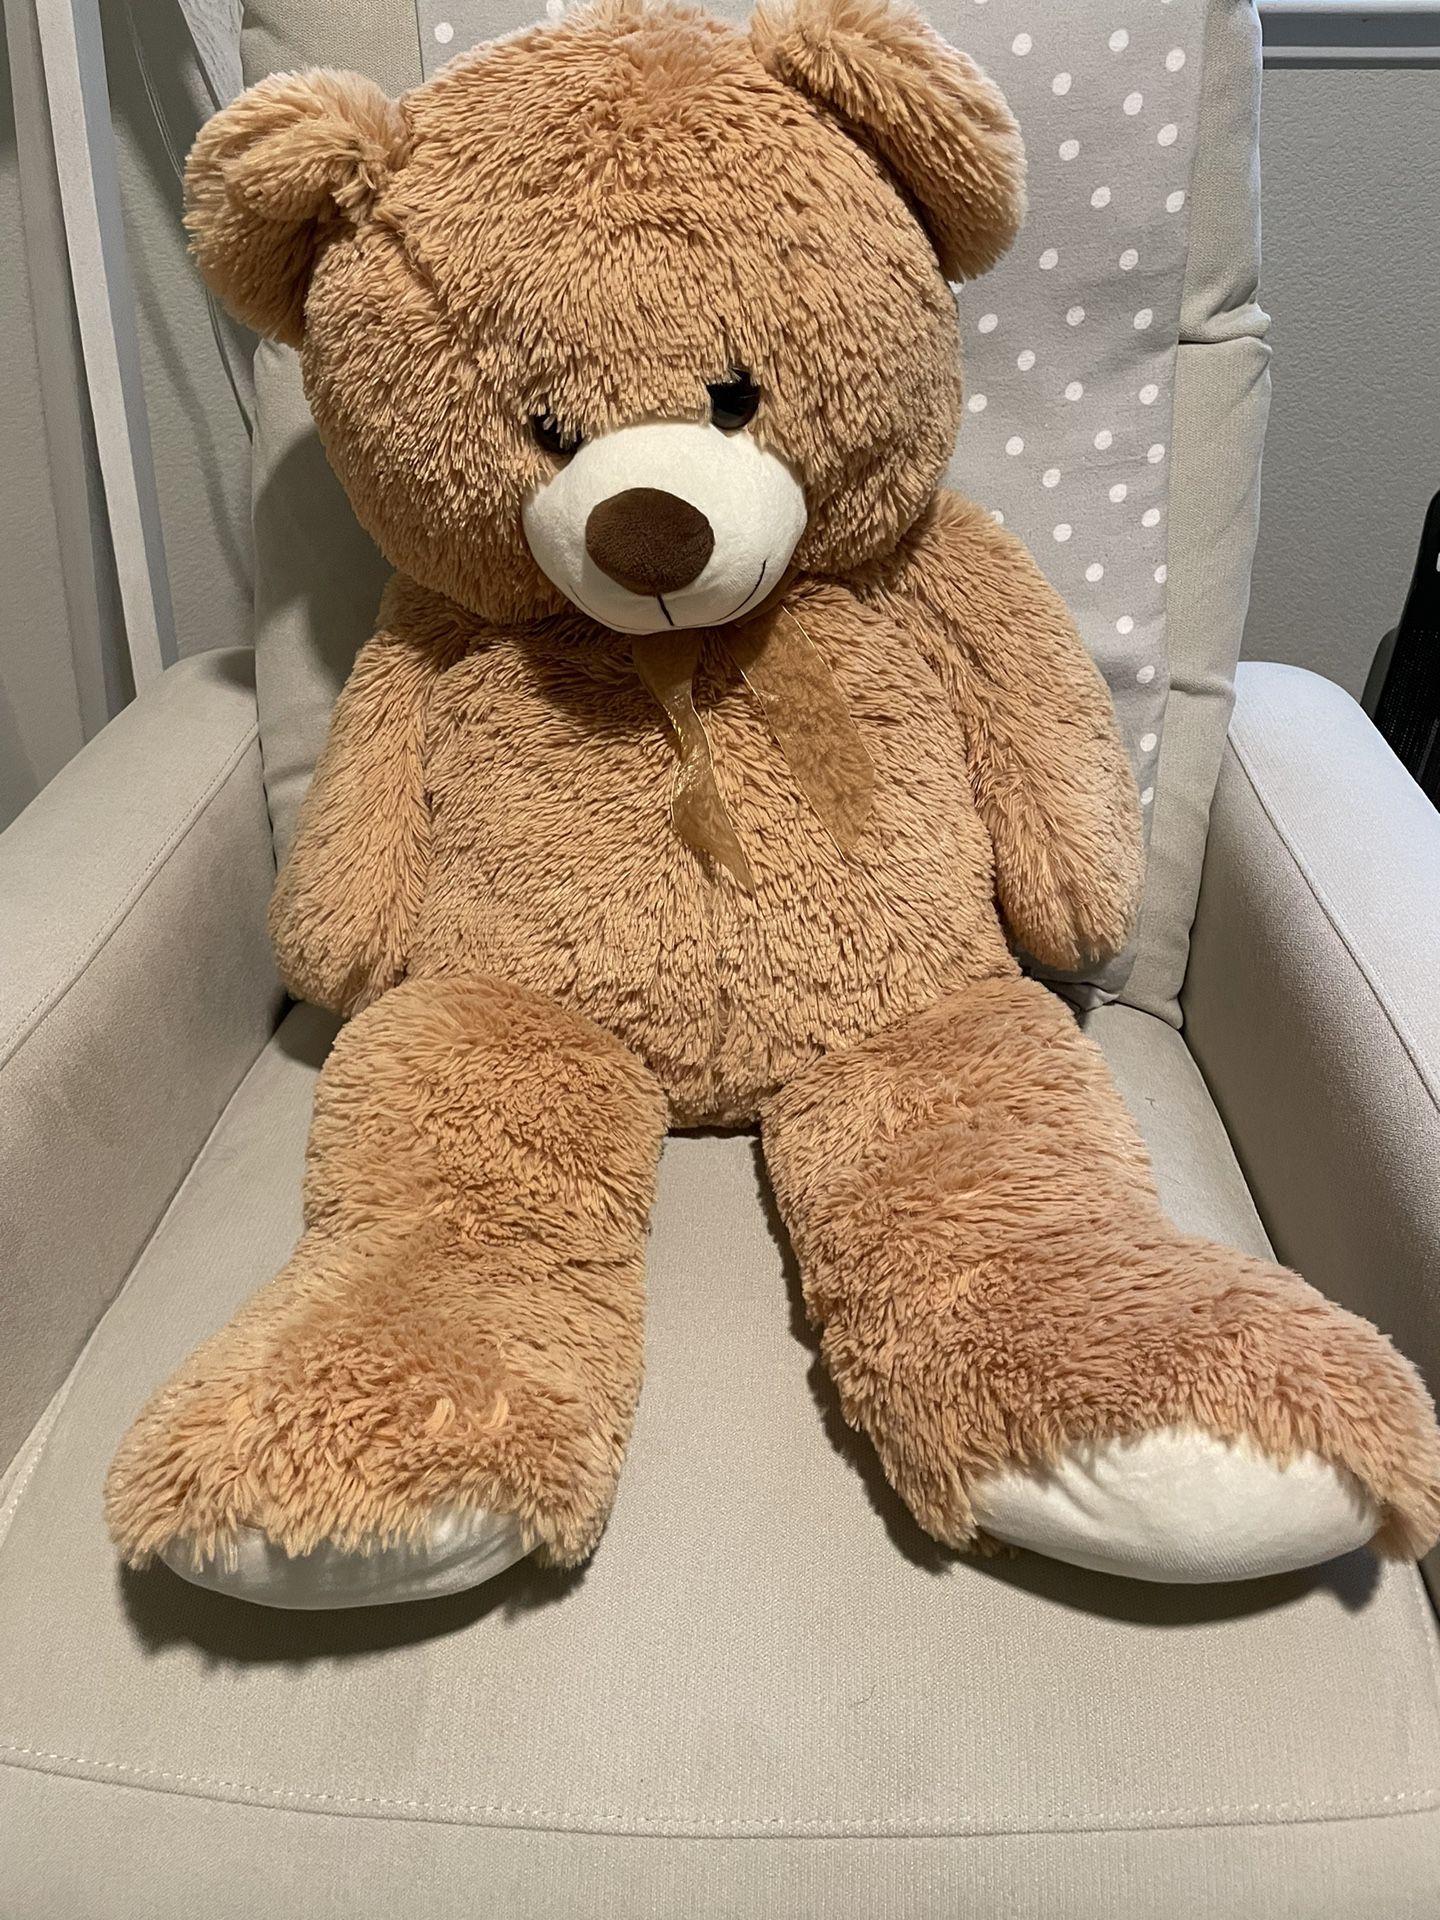 Giant 36in Teddy Bear